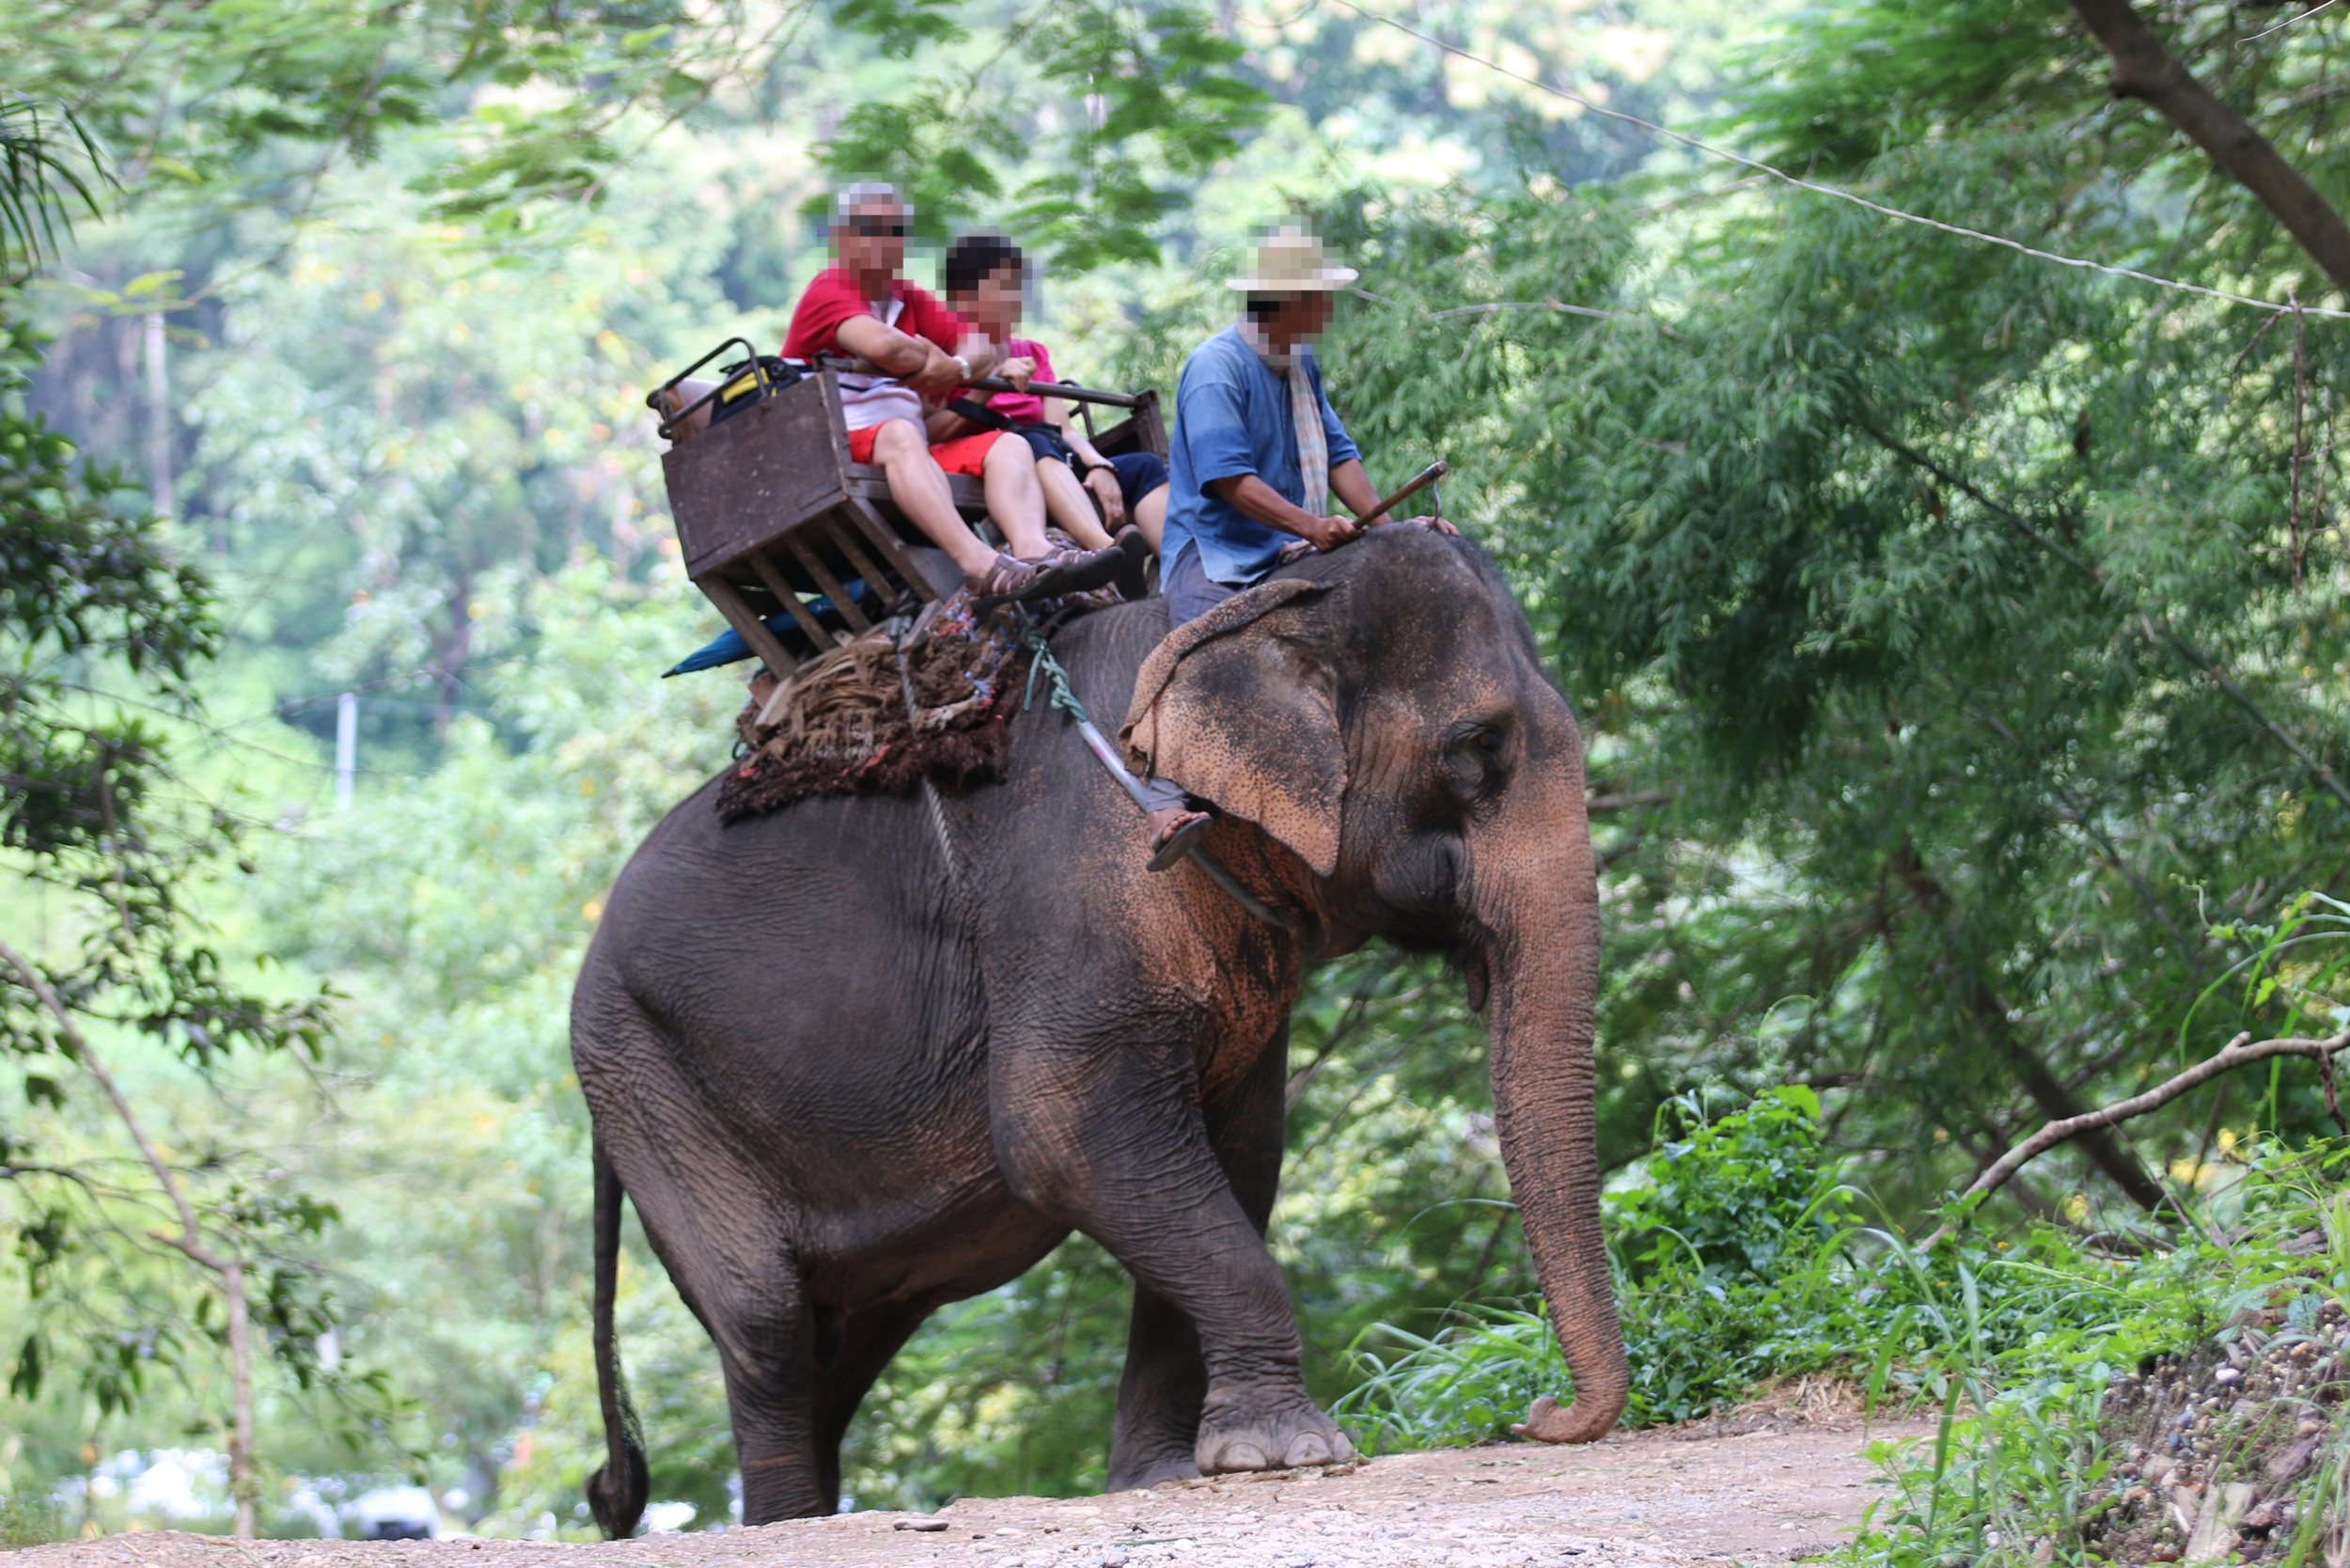 Turistas dan un paseo sobre un elefante en Tailandia.